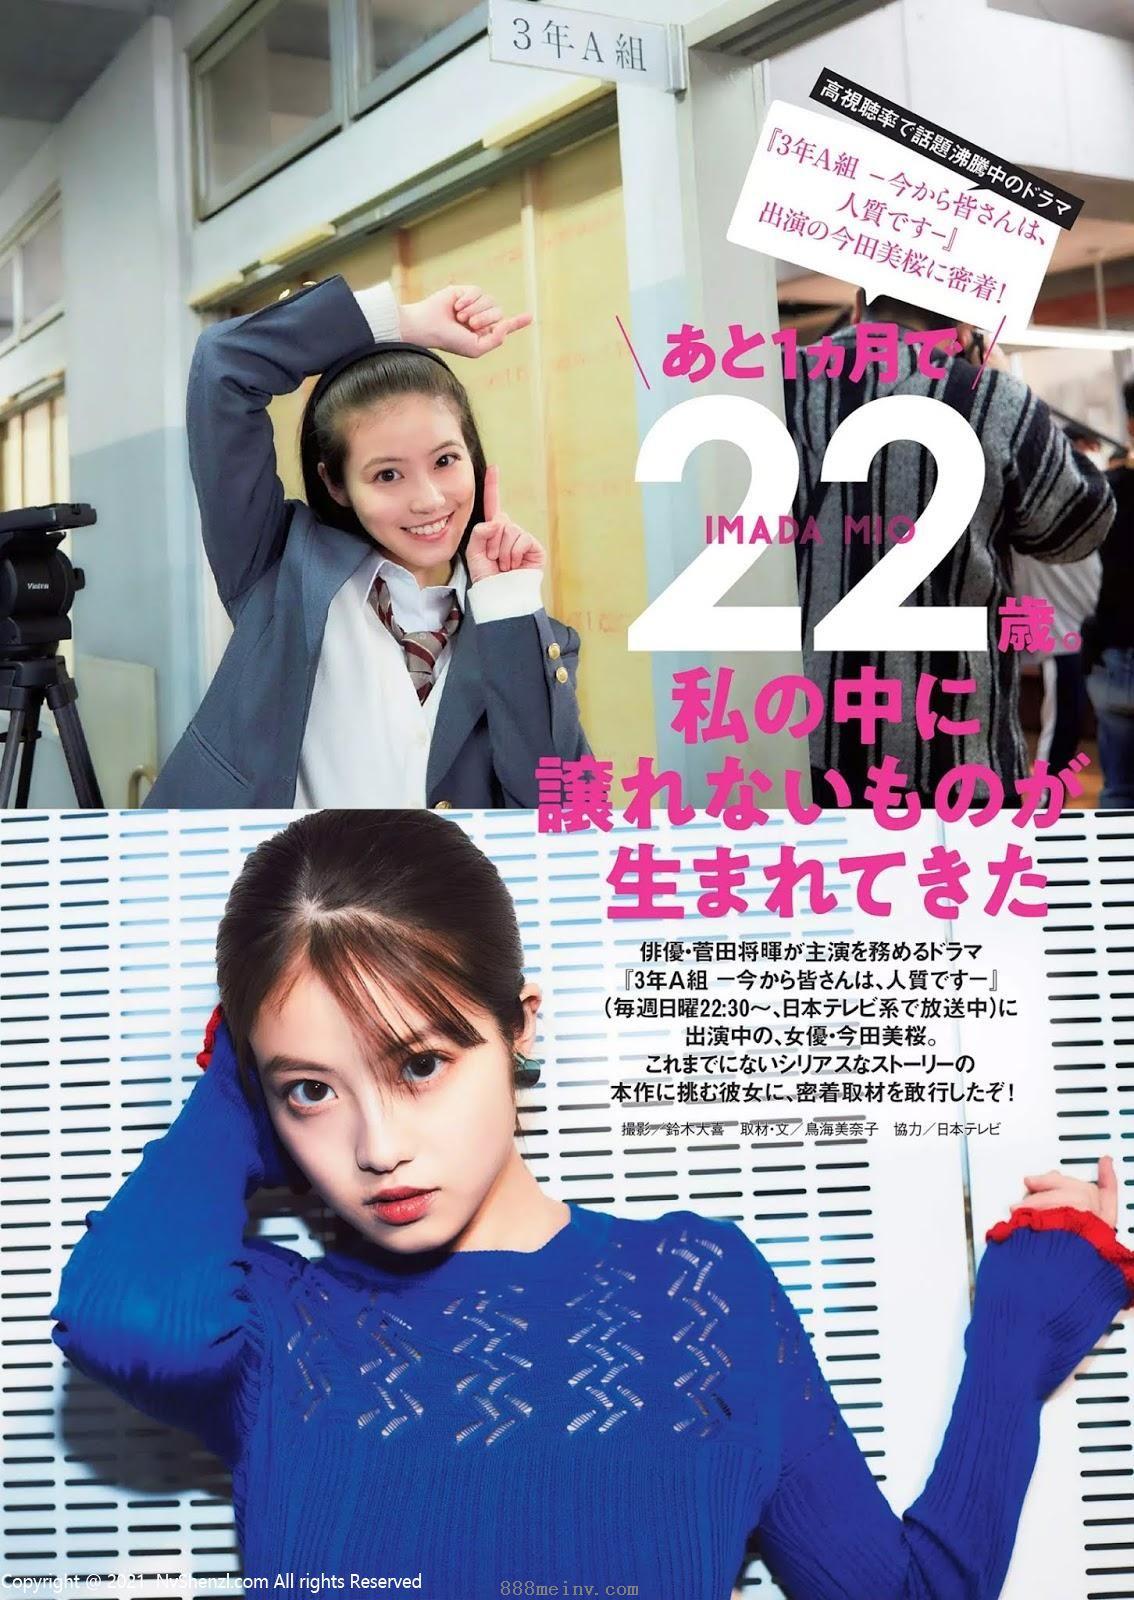 今田美桜, Imada Mio - Weekly Playboy, FLASH, FRIDAY, 2019